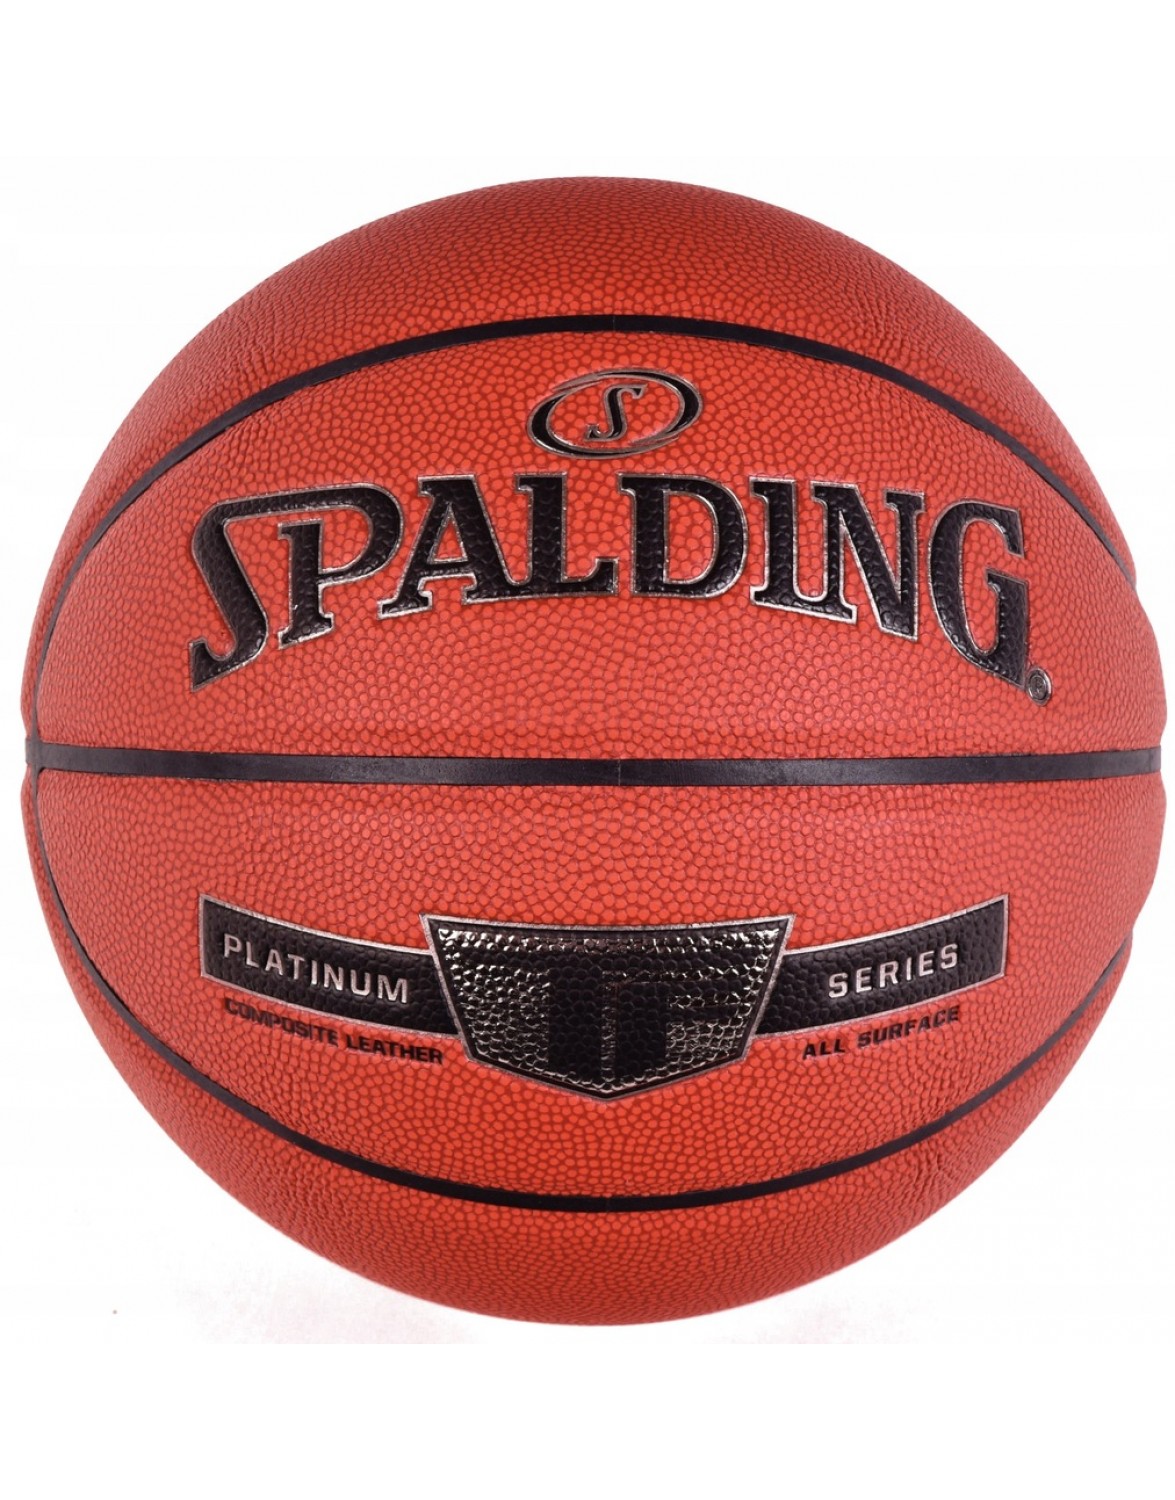 Баскетбольний м'яч Spalding TF-PLATINUM R. 7. SPALDING TF PLATINUM МАТЧ БАСКЕТБОЛЬНИЙ М'ЯЧ 7 ШКІРА ТОП МОДЕЛЬ